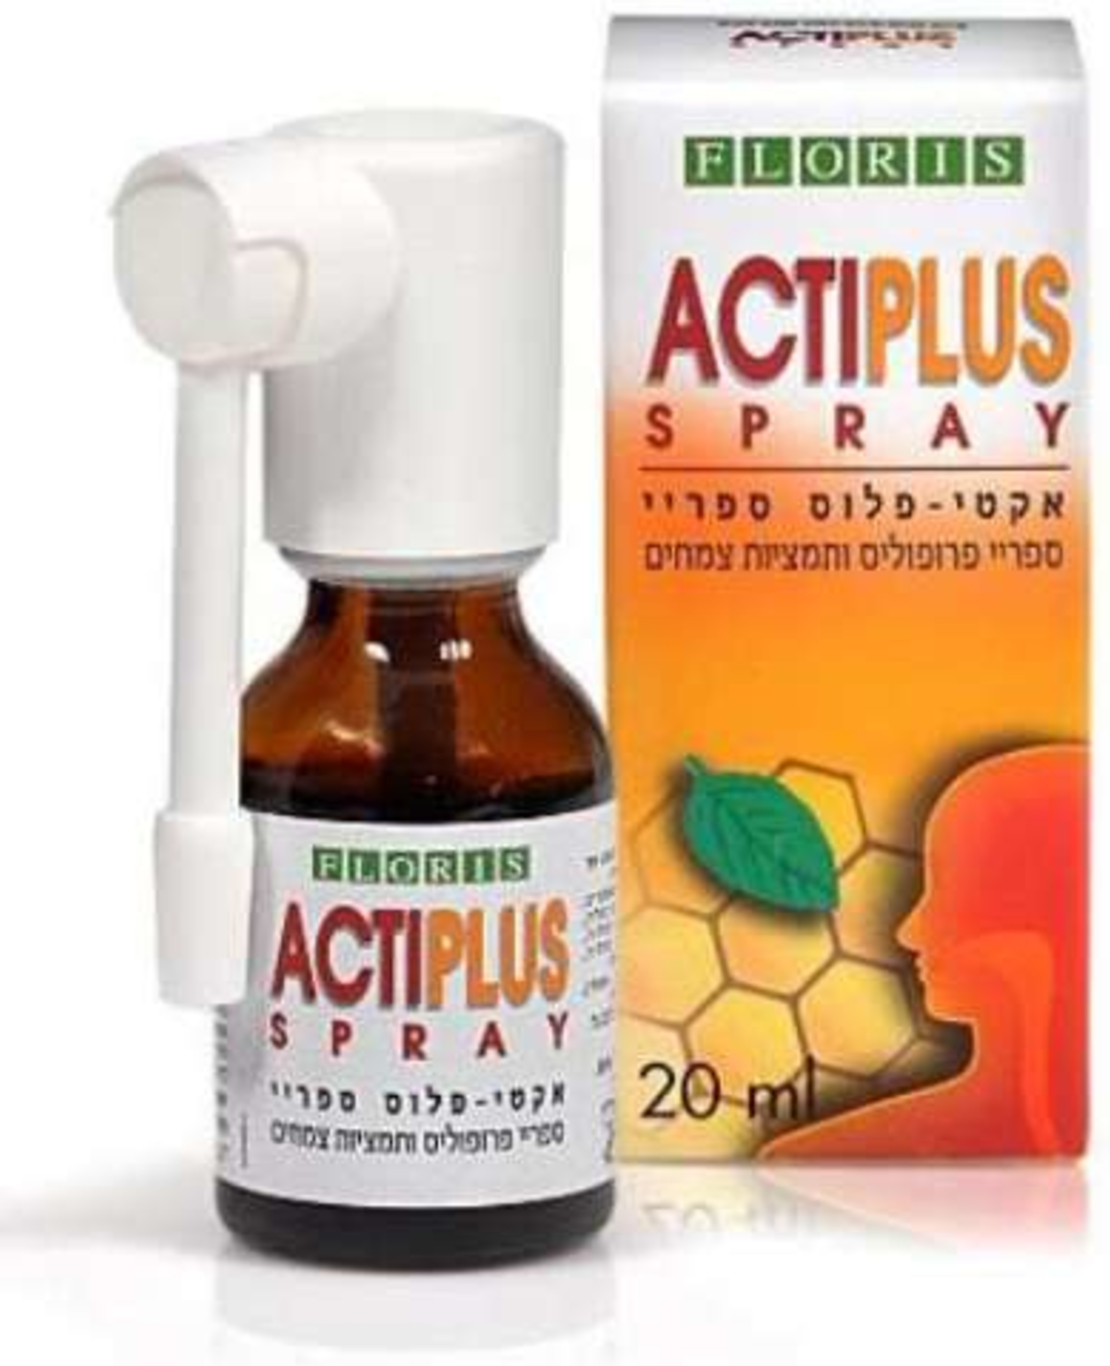 אקטיפלוס ספריי - להקלה בכאבי גרון Actiplus Spray